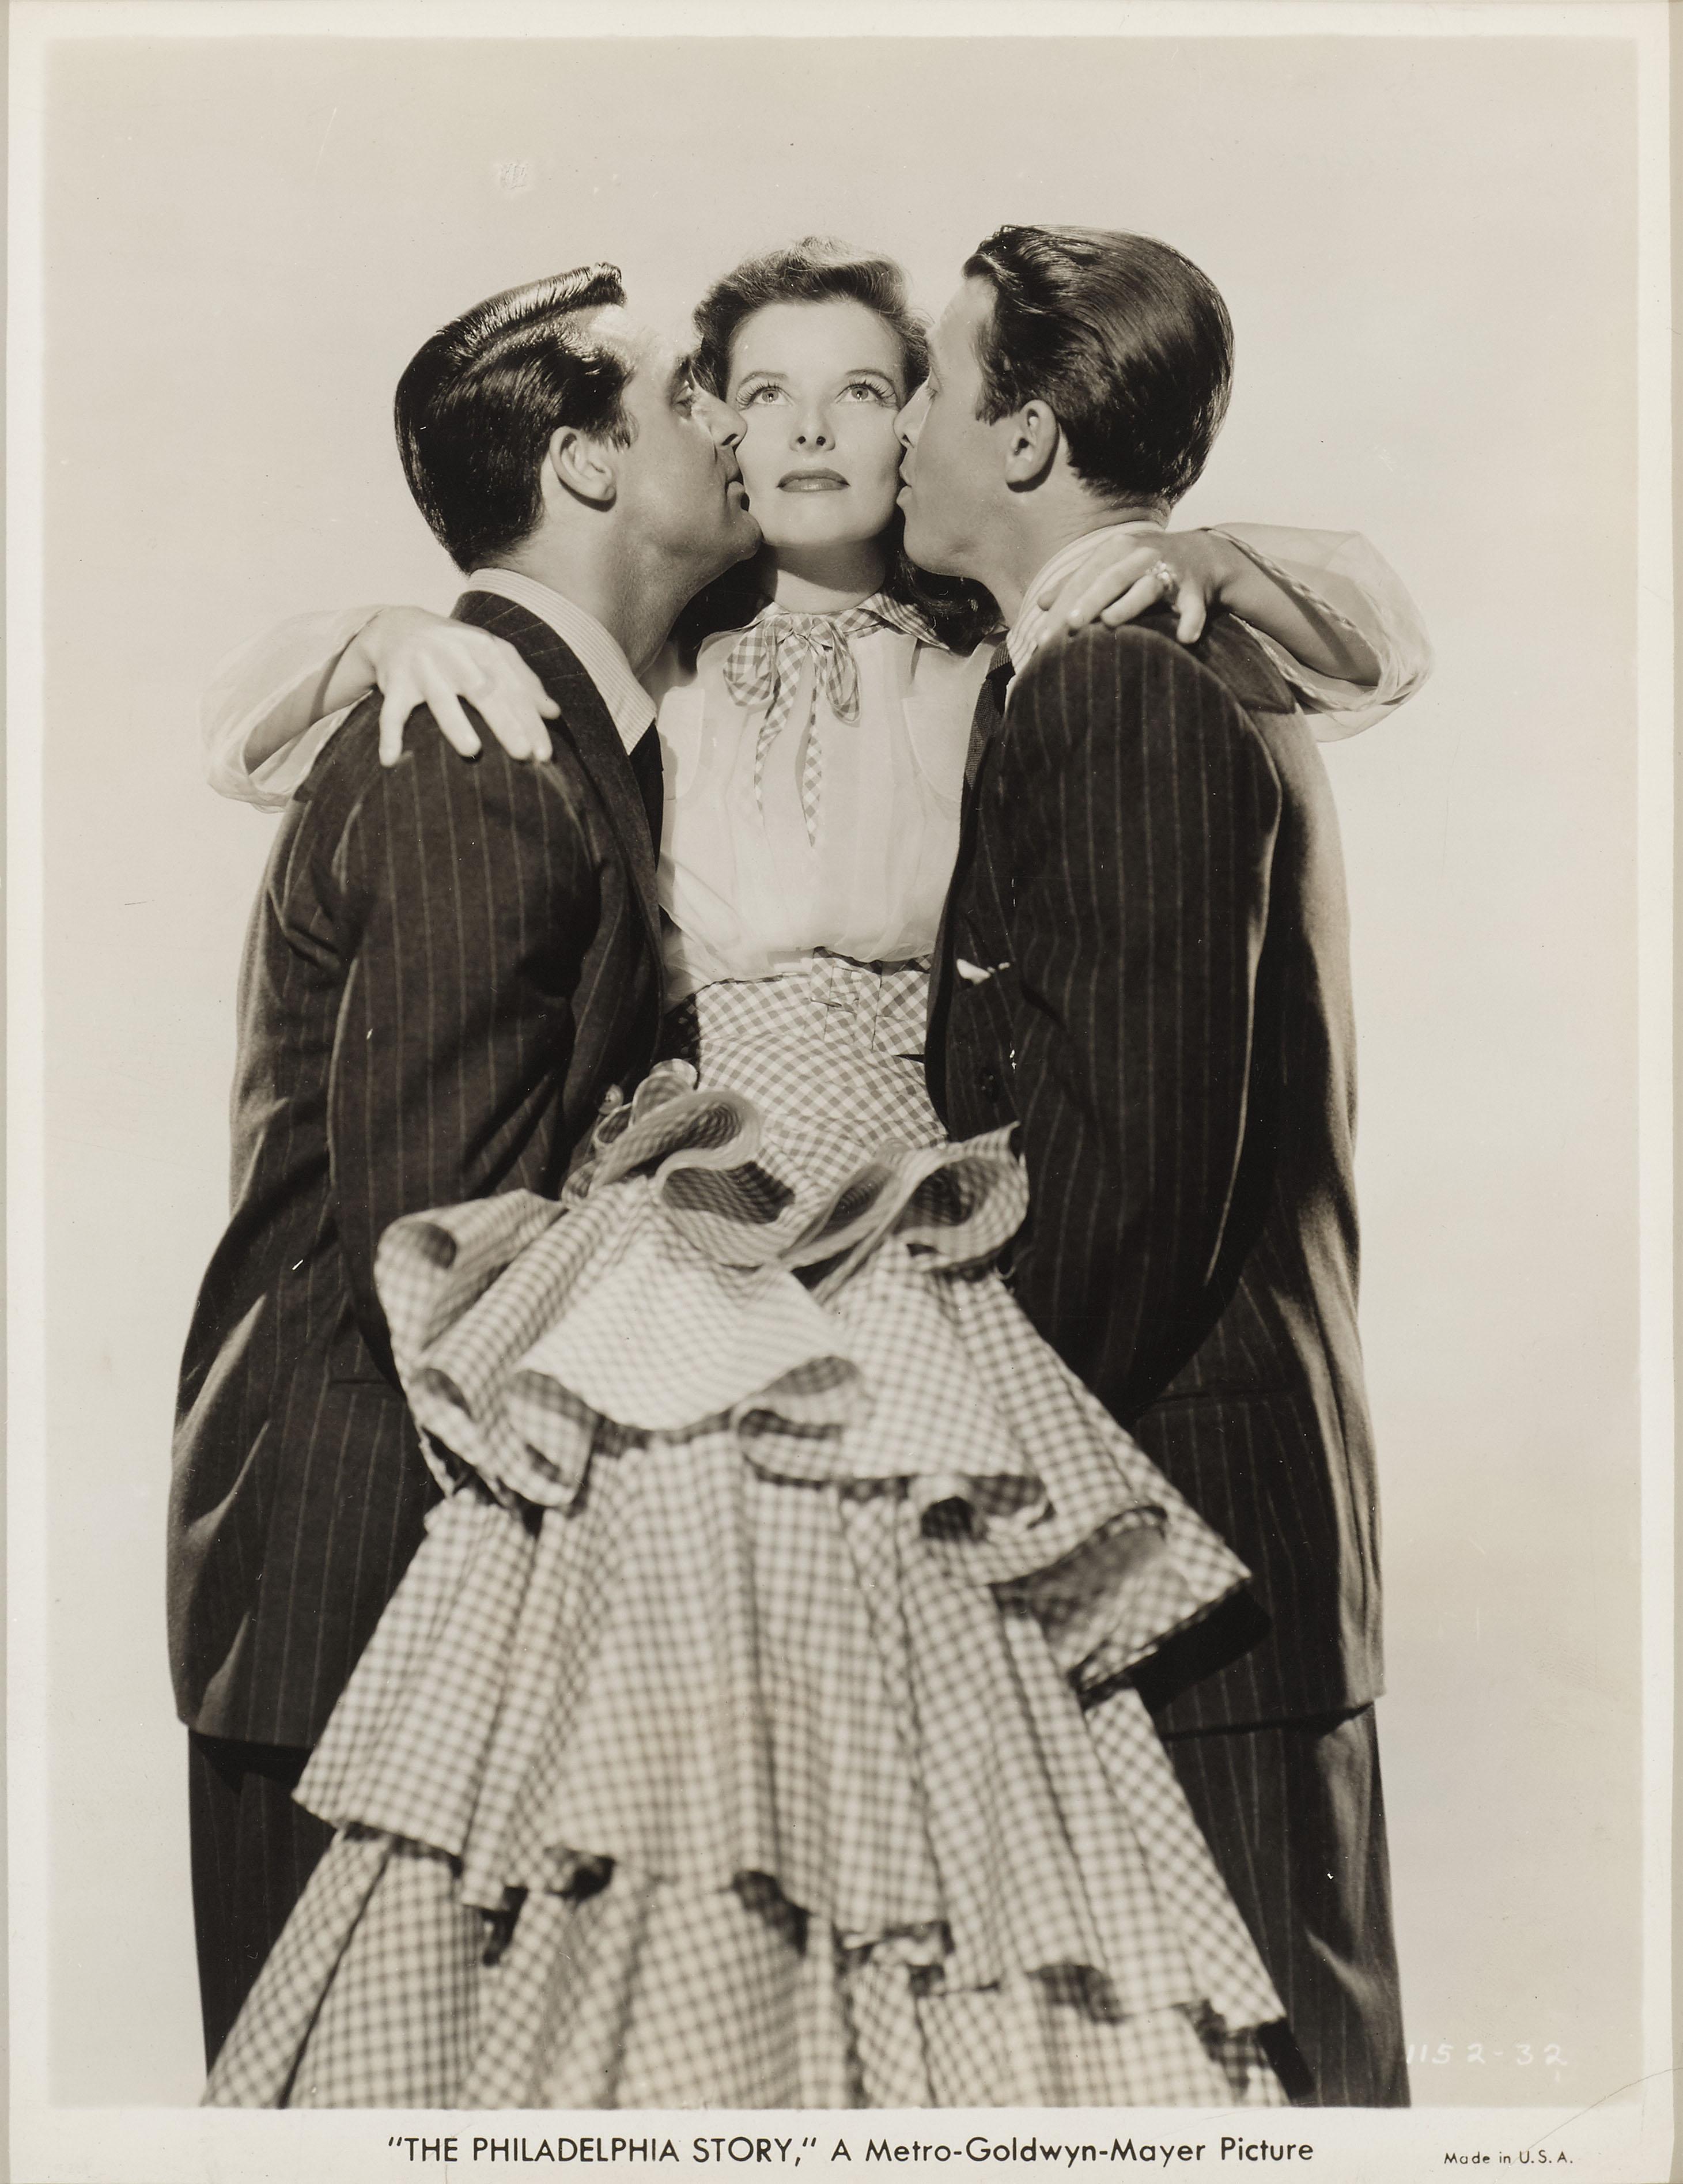 Original-Fotostandbild für die klassische Komödie von 1940 
mit Cary Grant, Katherine Hepburn und James Stewart in den Hauptrollen.

Dieses Stück ist konservatorisch gerahmt und in einem  Rahmen aus Tulpenholz, säurefreie Passepartouts und